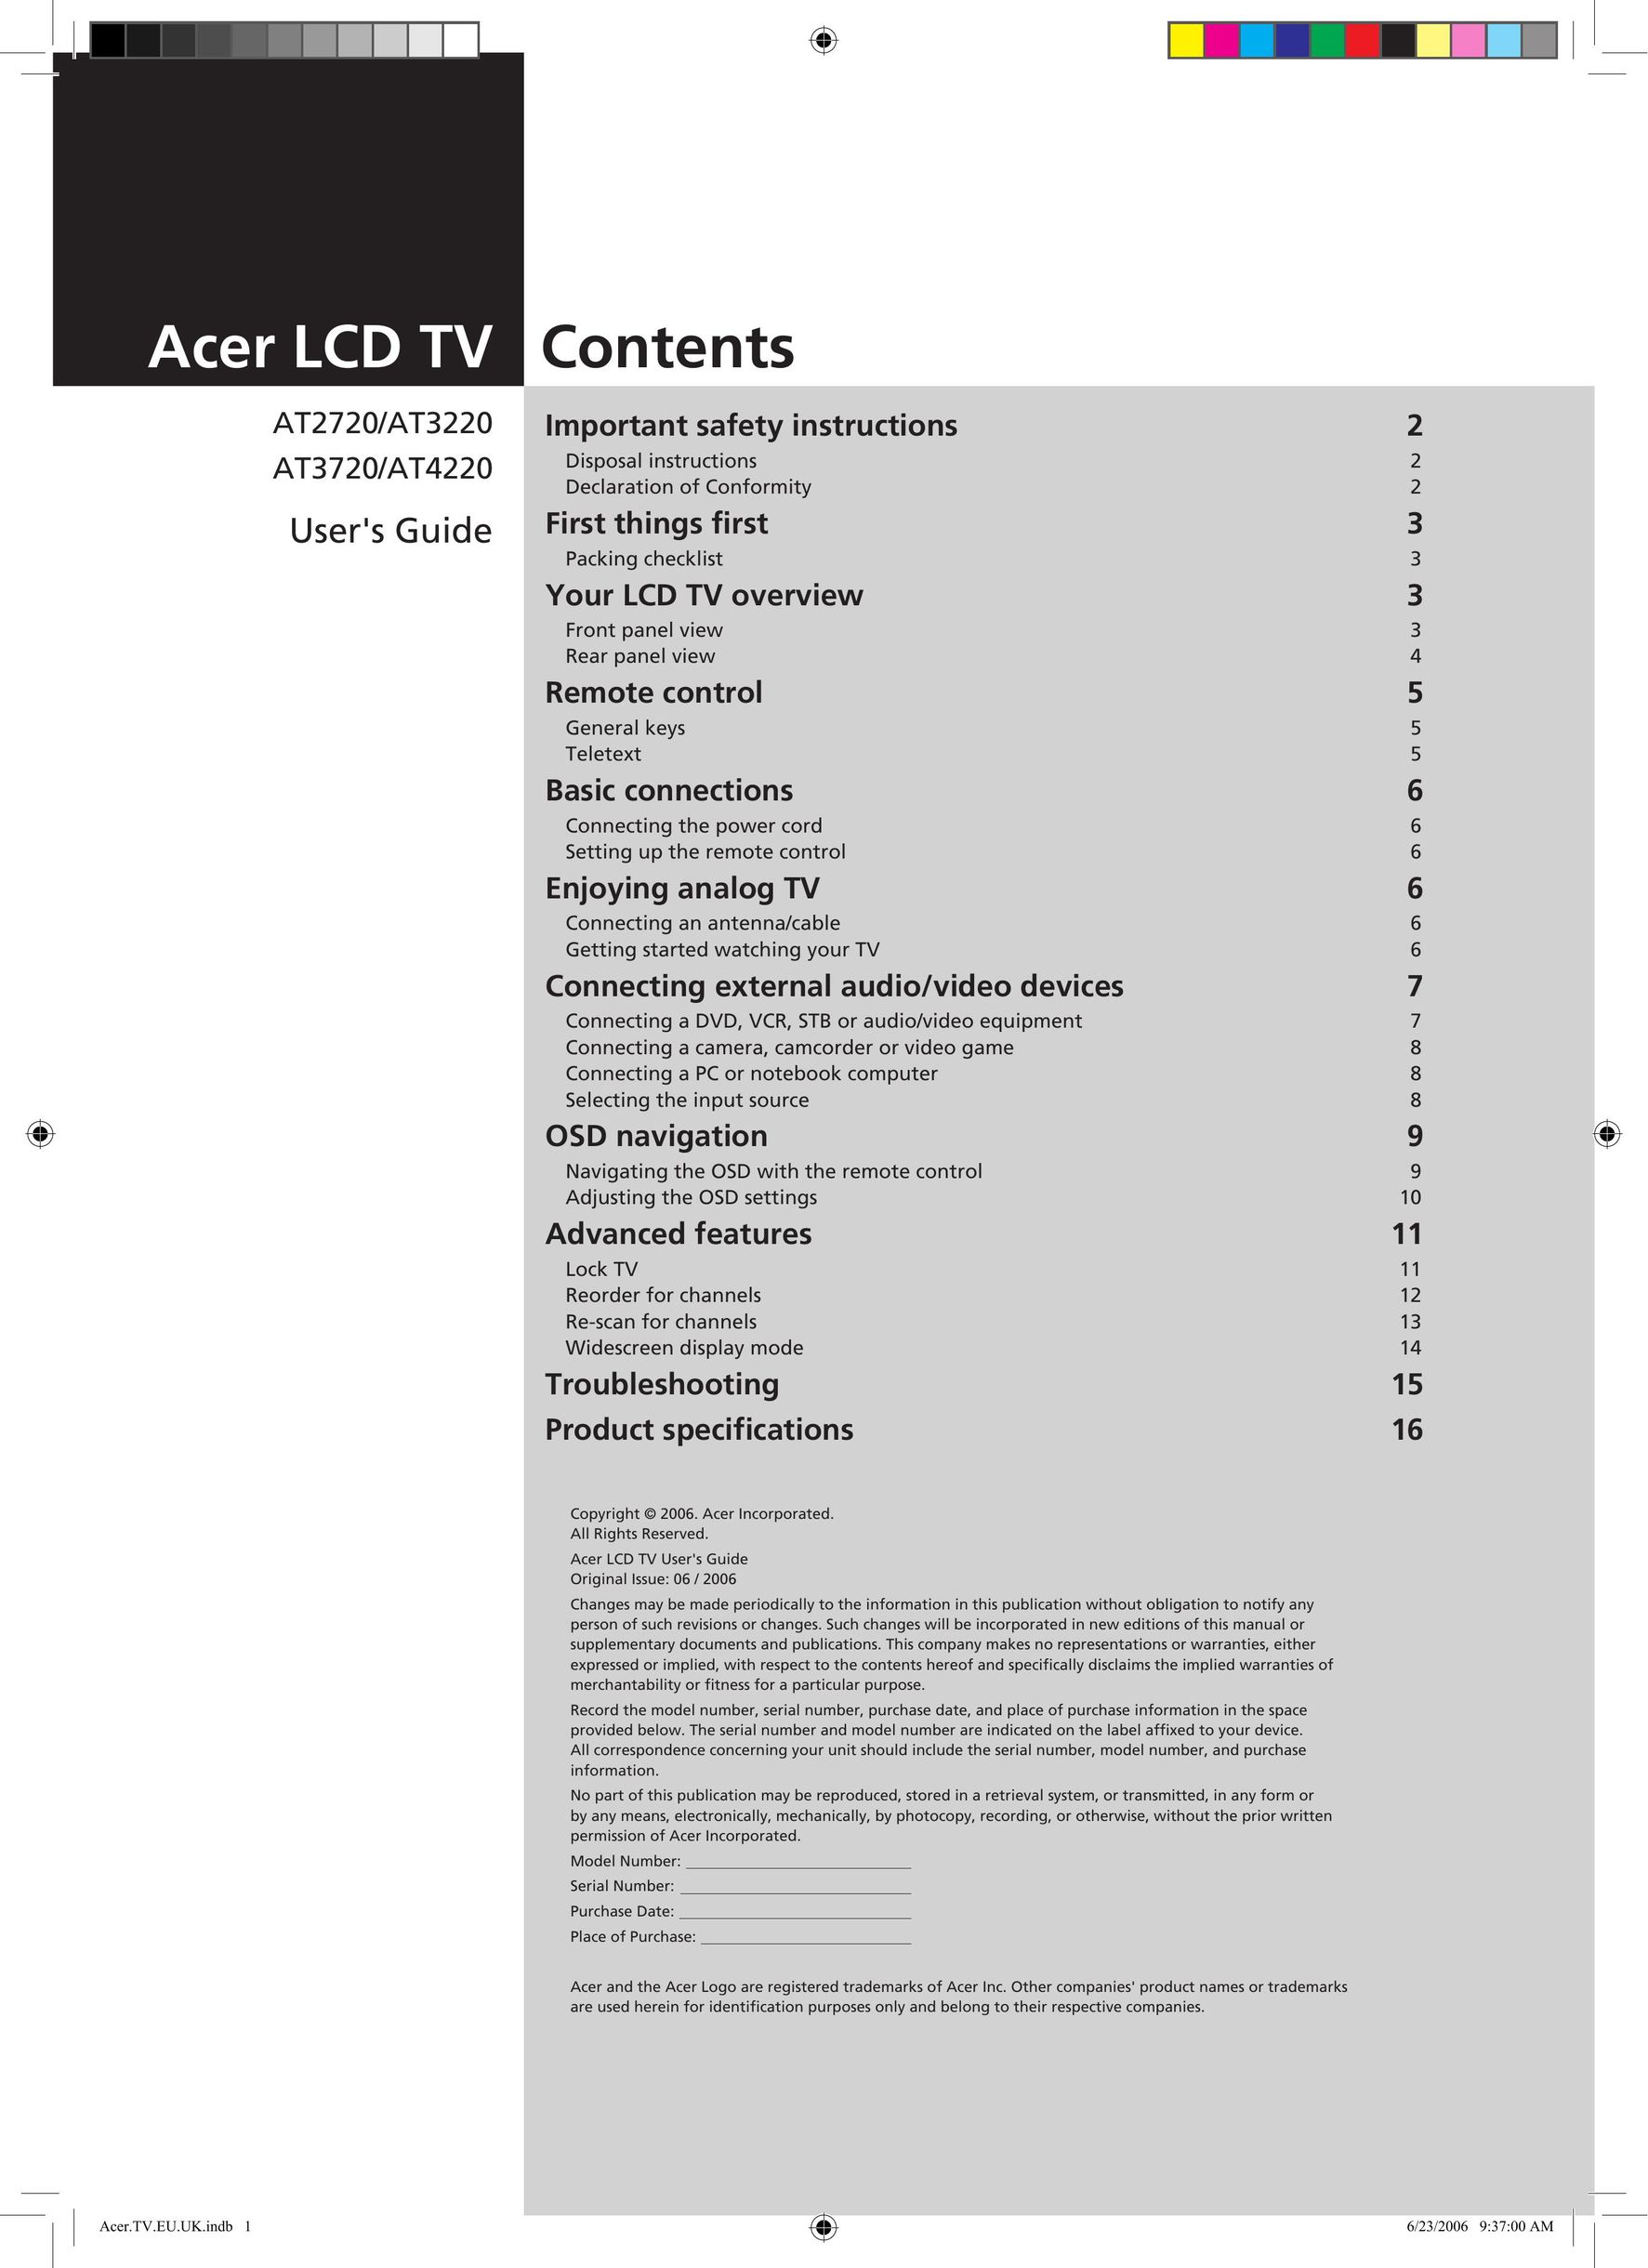 Acer AT3720, AT4220 Flat Panel Television User Manual